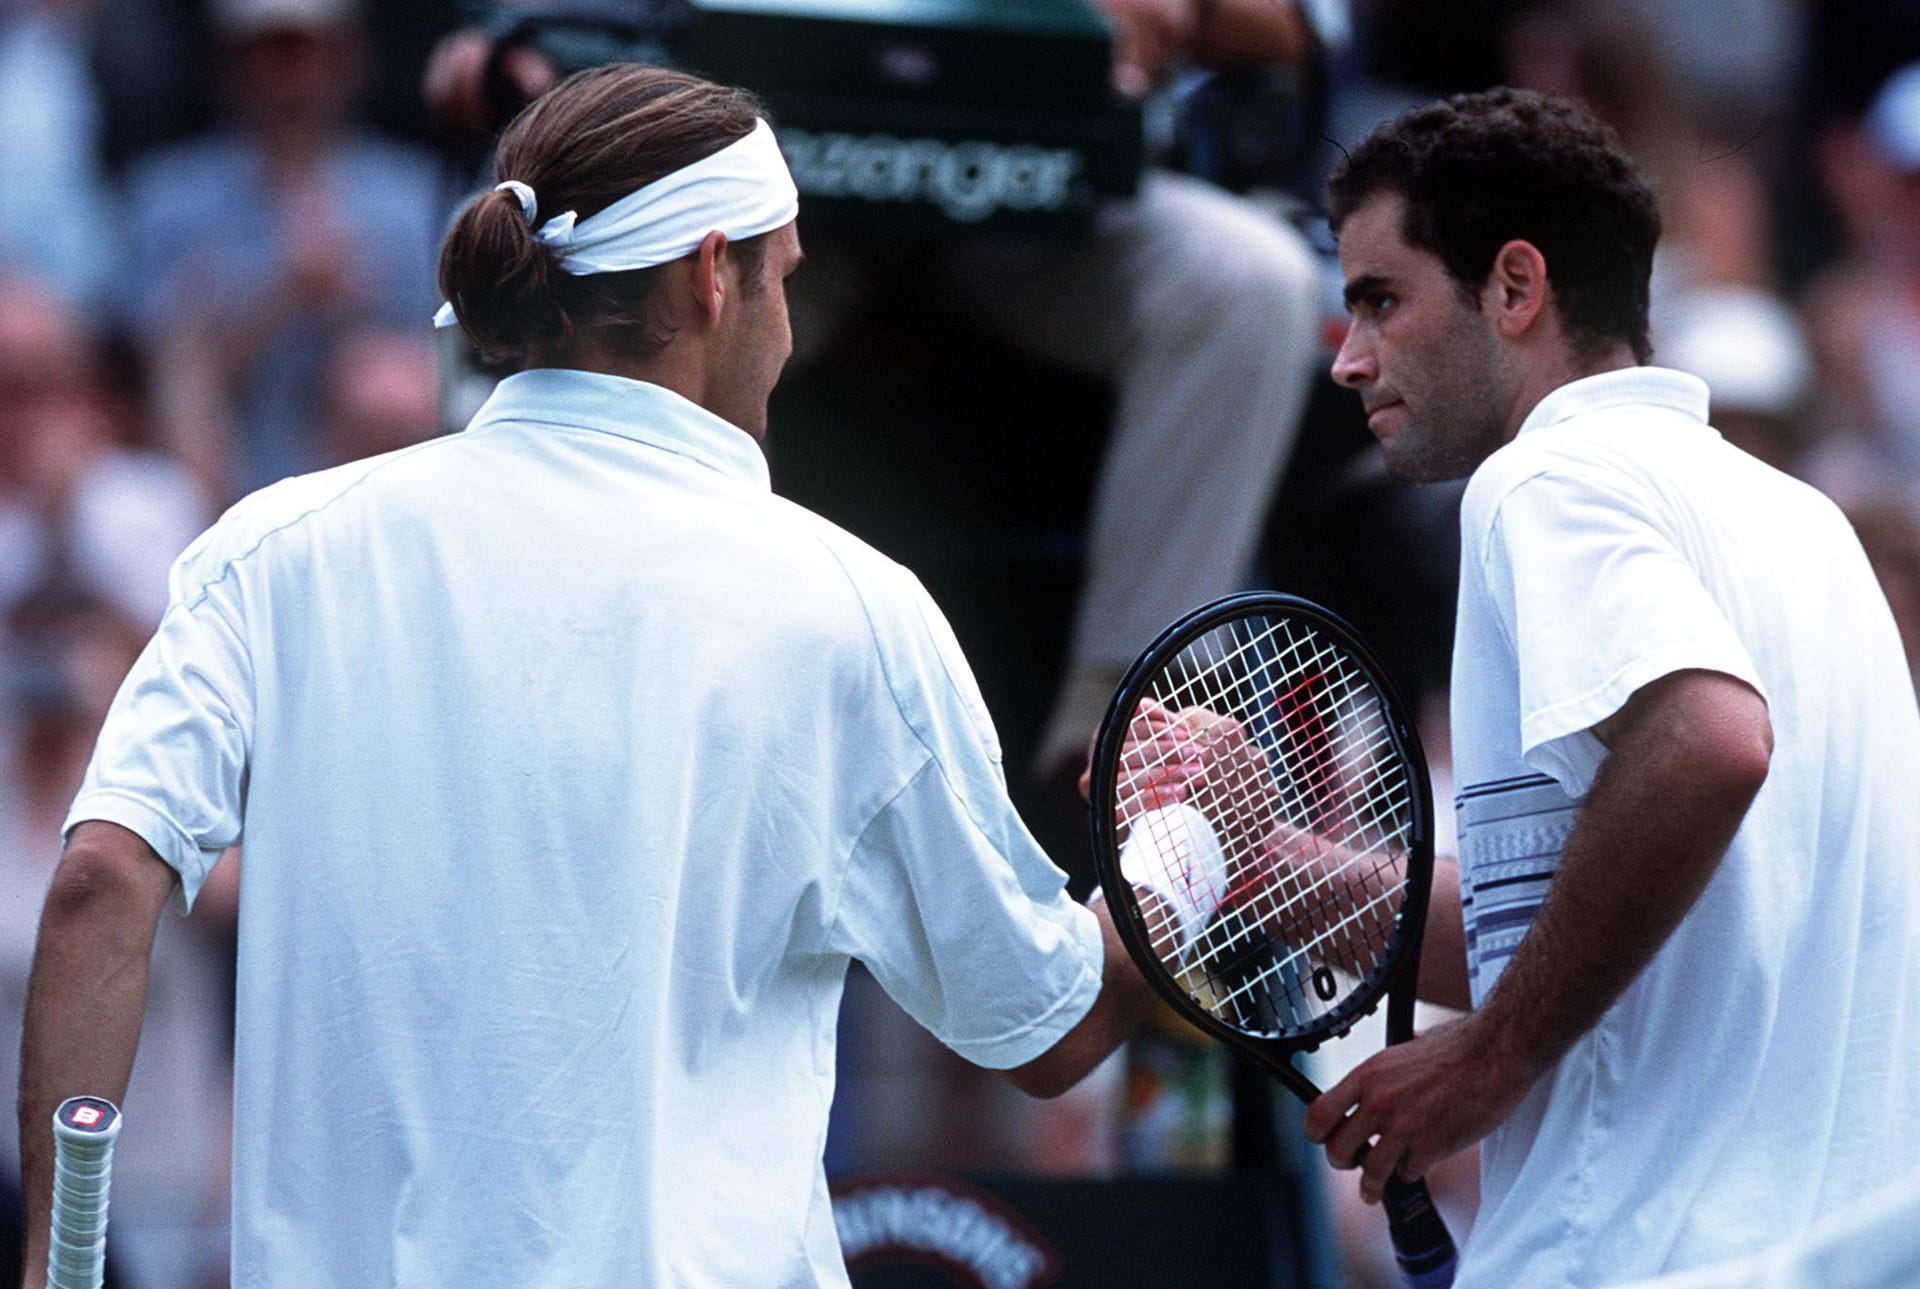 Wimbledon 2001: Als Nummer 15 der Welt ist Federer Tennis-Fans schon ein Begriff. Seinen internationalen Durchbruch feiert er jedoch, als er im Achtelfinale von Wimbledon den siebenmaligen Champion Pete Sampras in einer packenden Fünfsatz-Partie bezwingt. Zwar verliert er im Viertelfinale gegen Tim Henman. Dennoch ist es der Auftakt zu einer einzigartigen Erfolgsgeschichte.